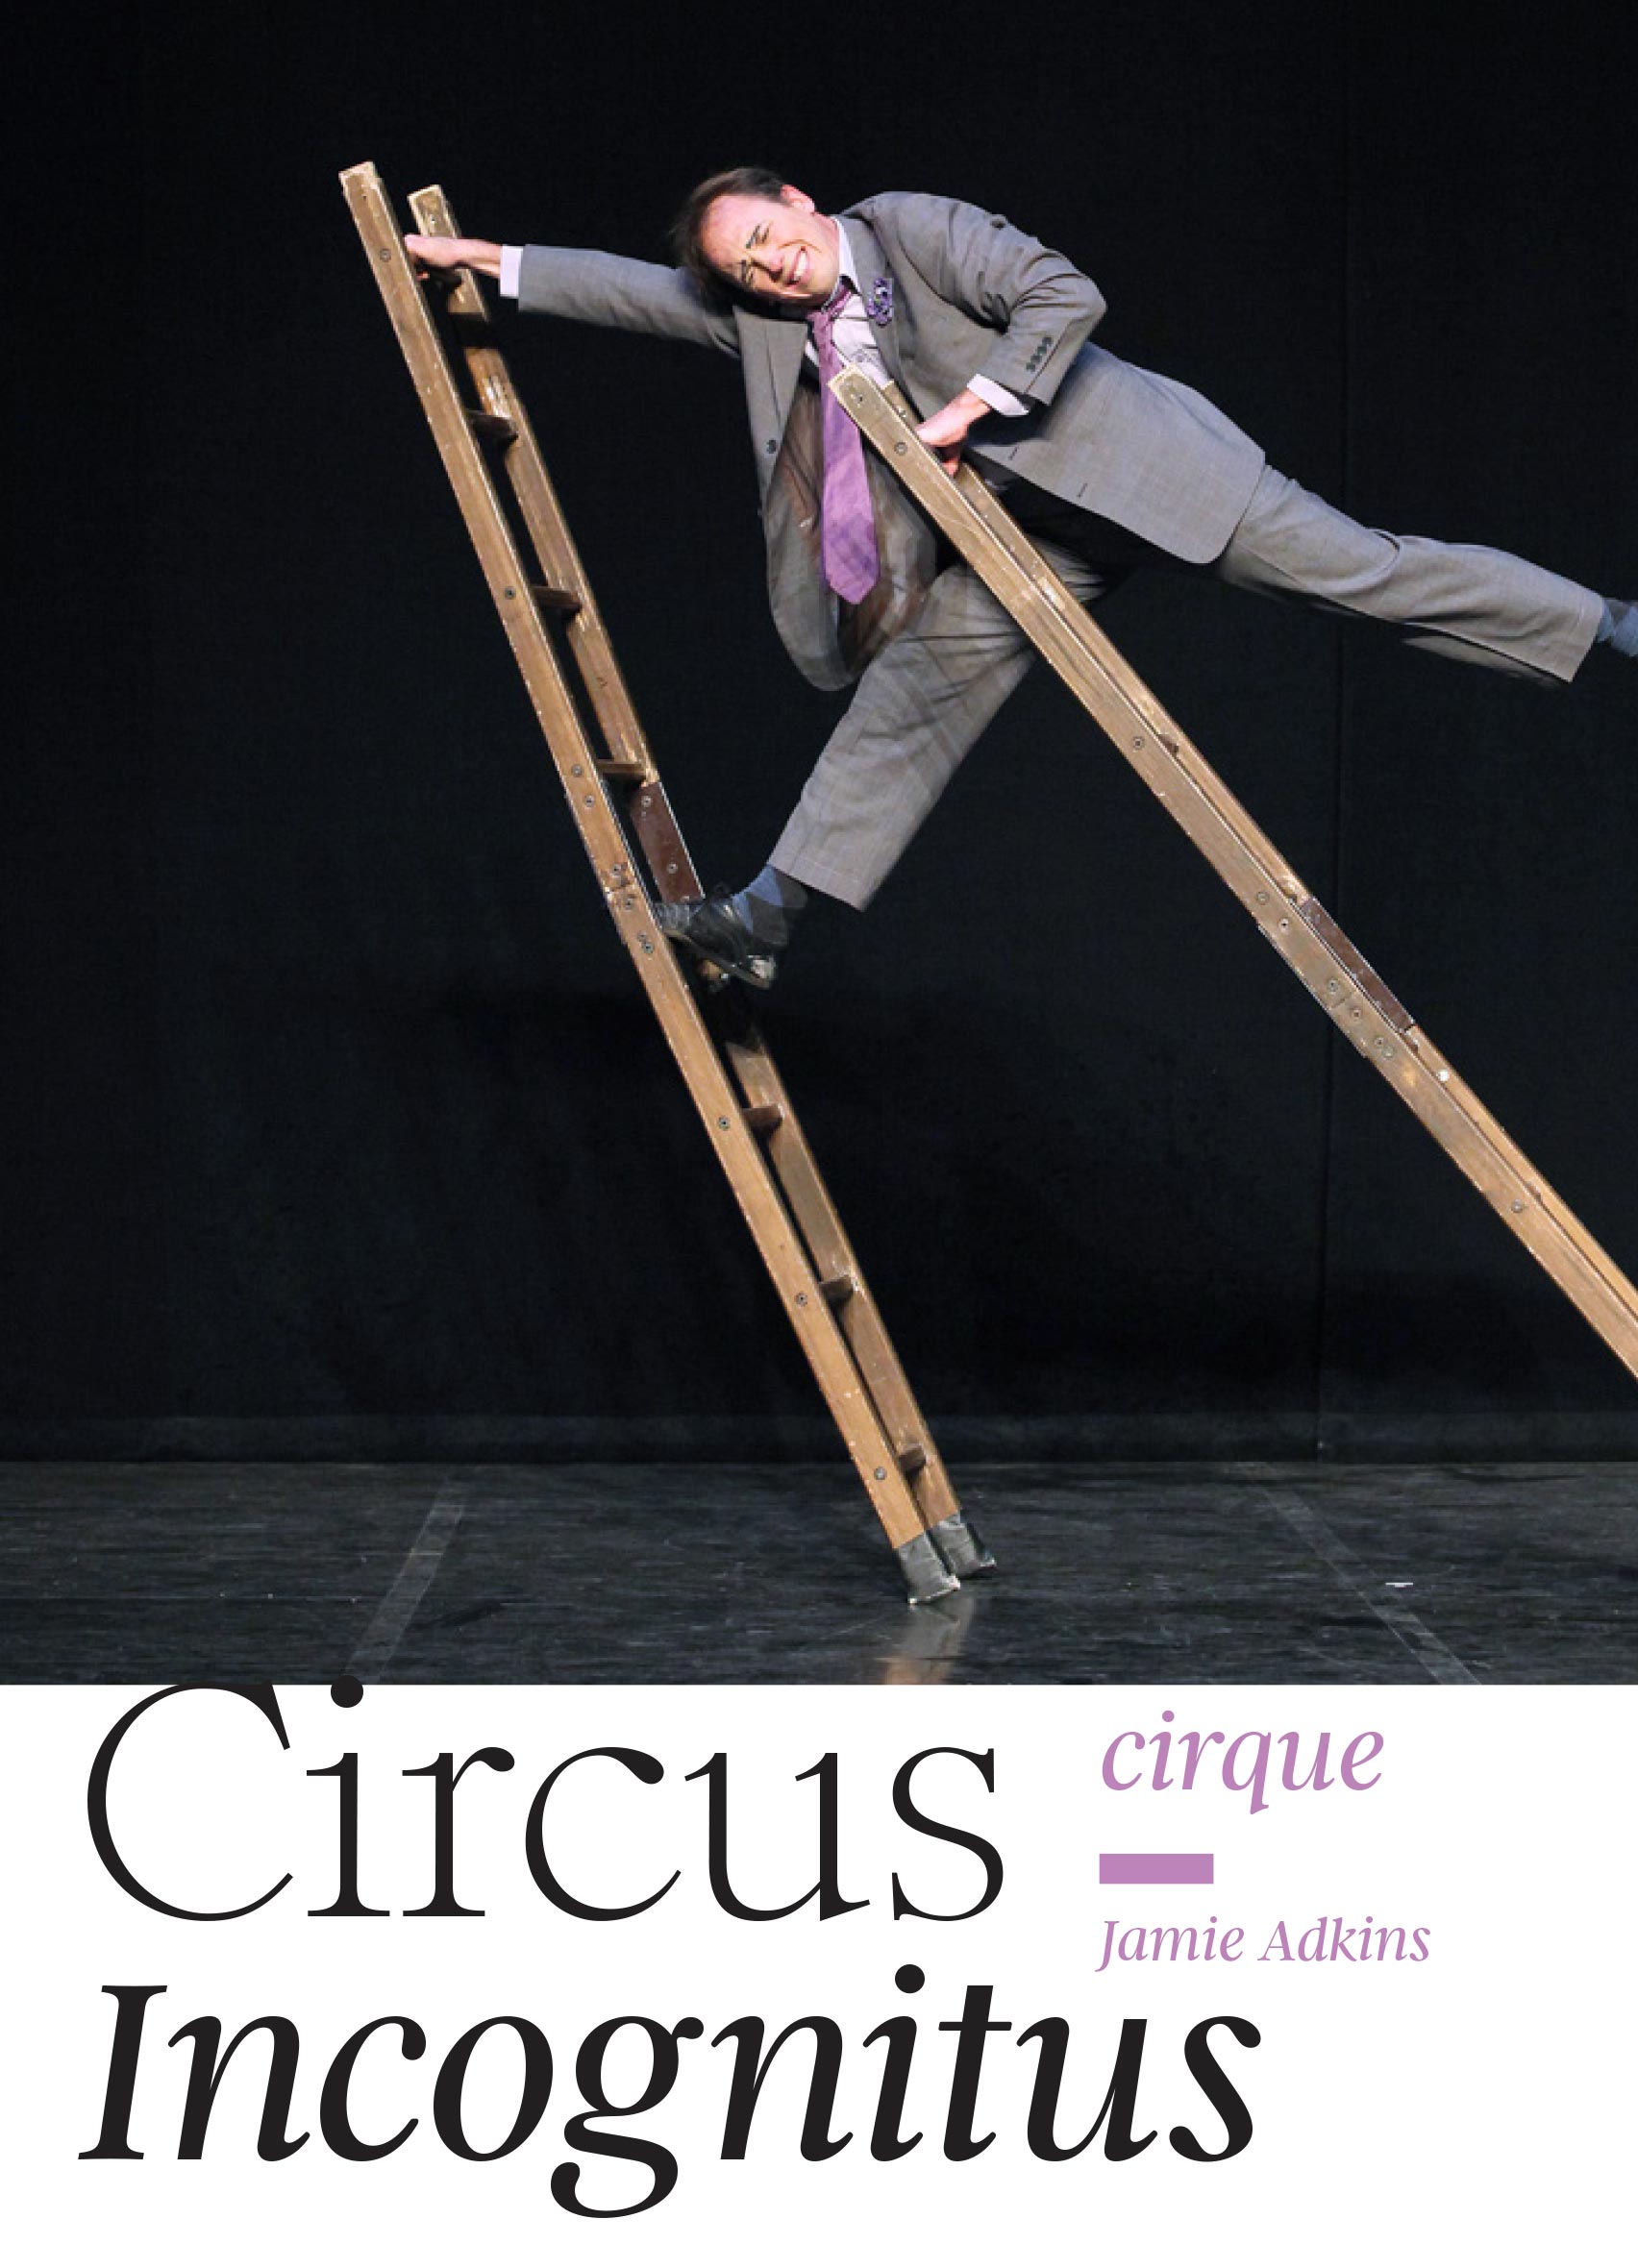 Circus incognitus